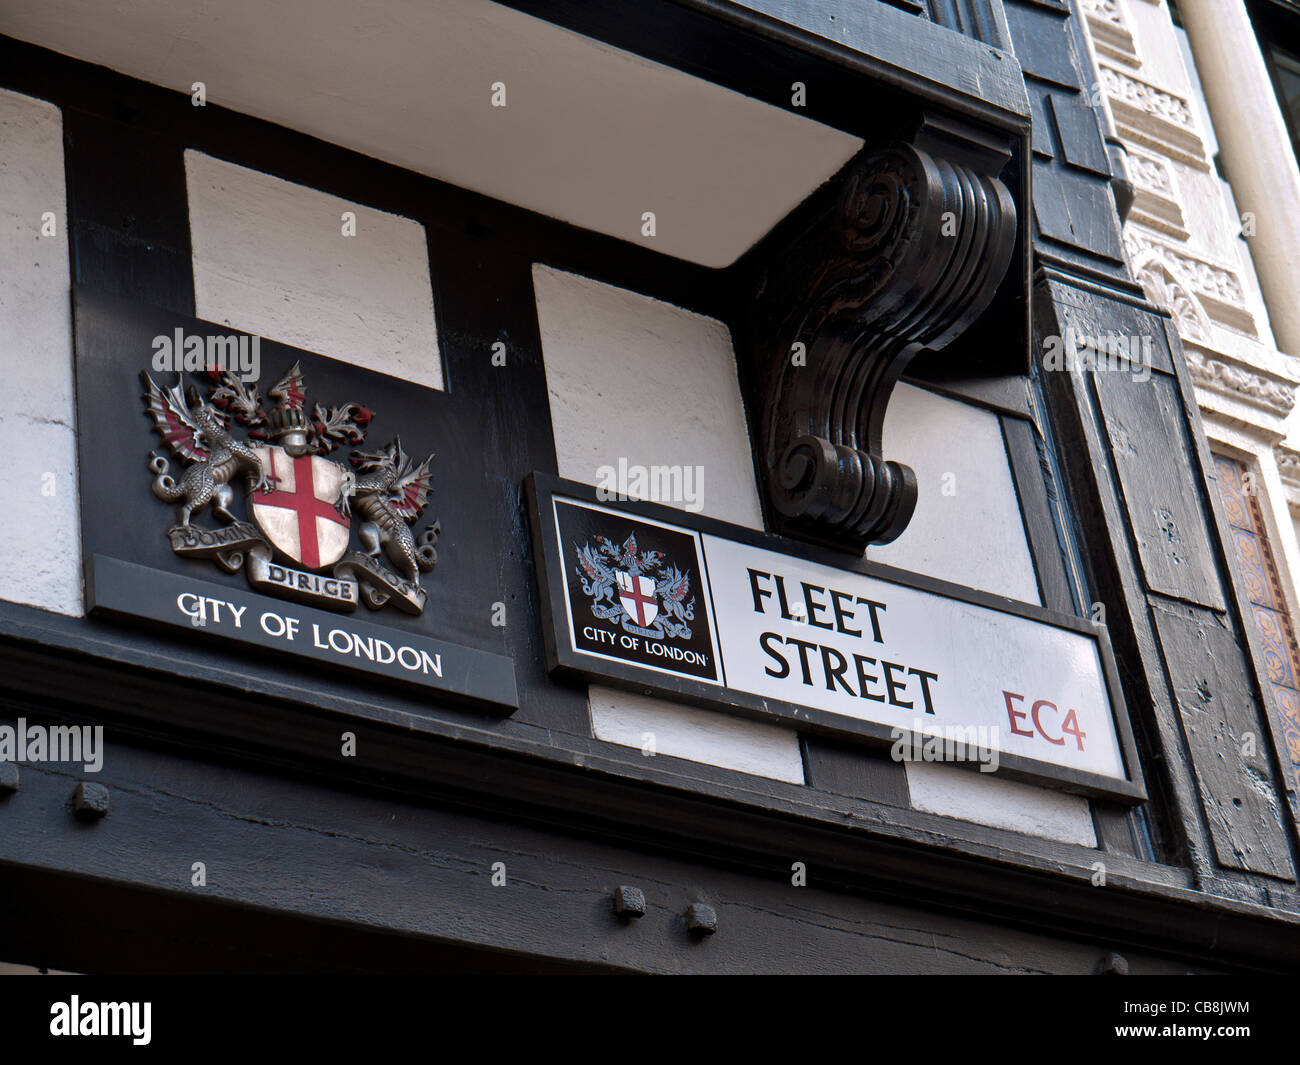 Signe de la rue Fleet et ville de Londres London EC4 UK Banque D'Images